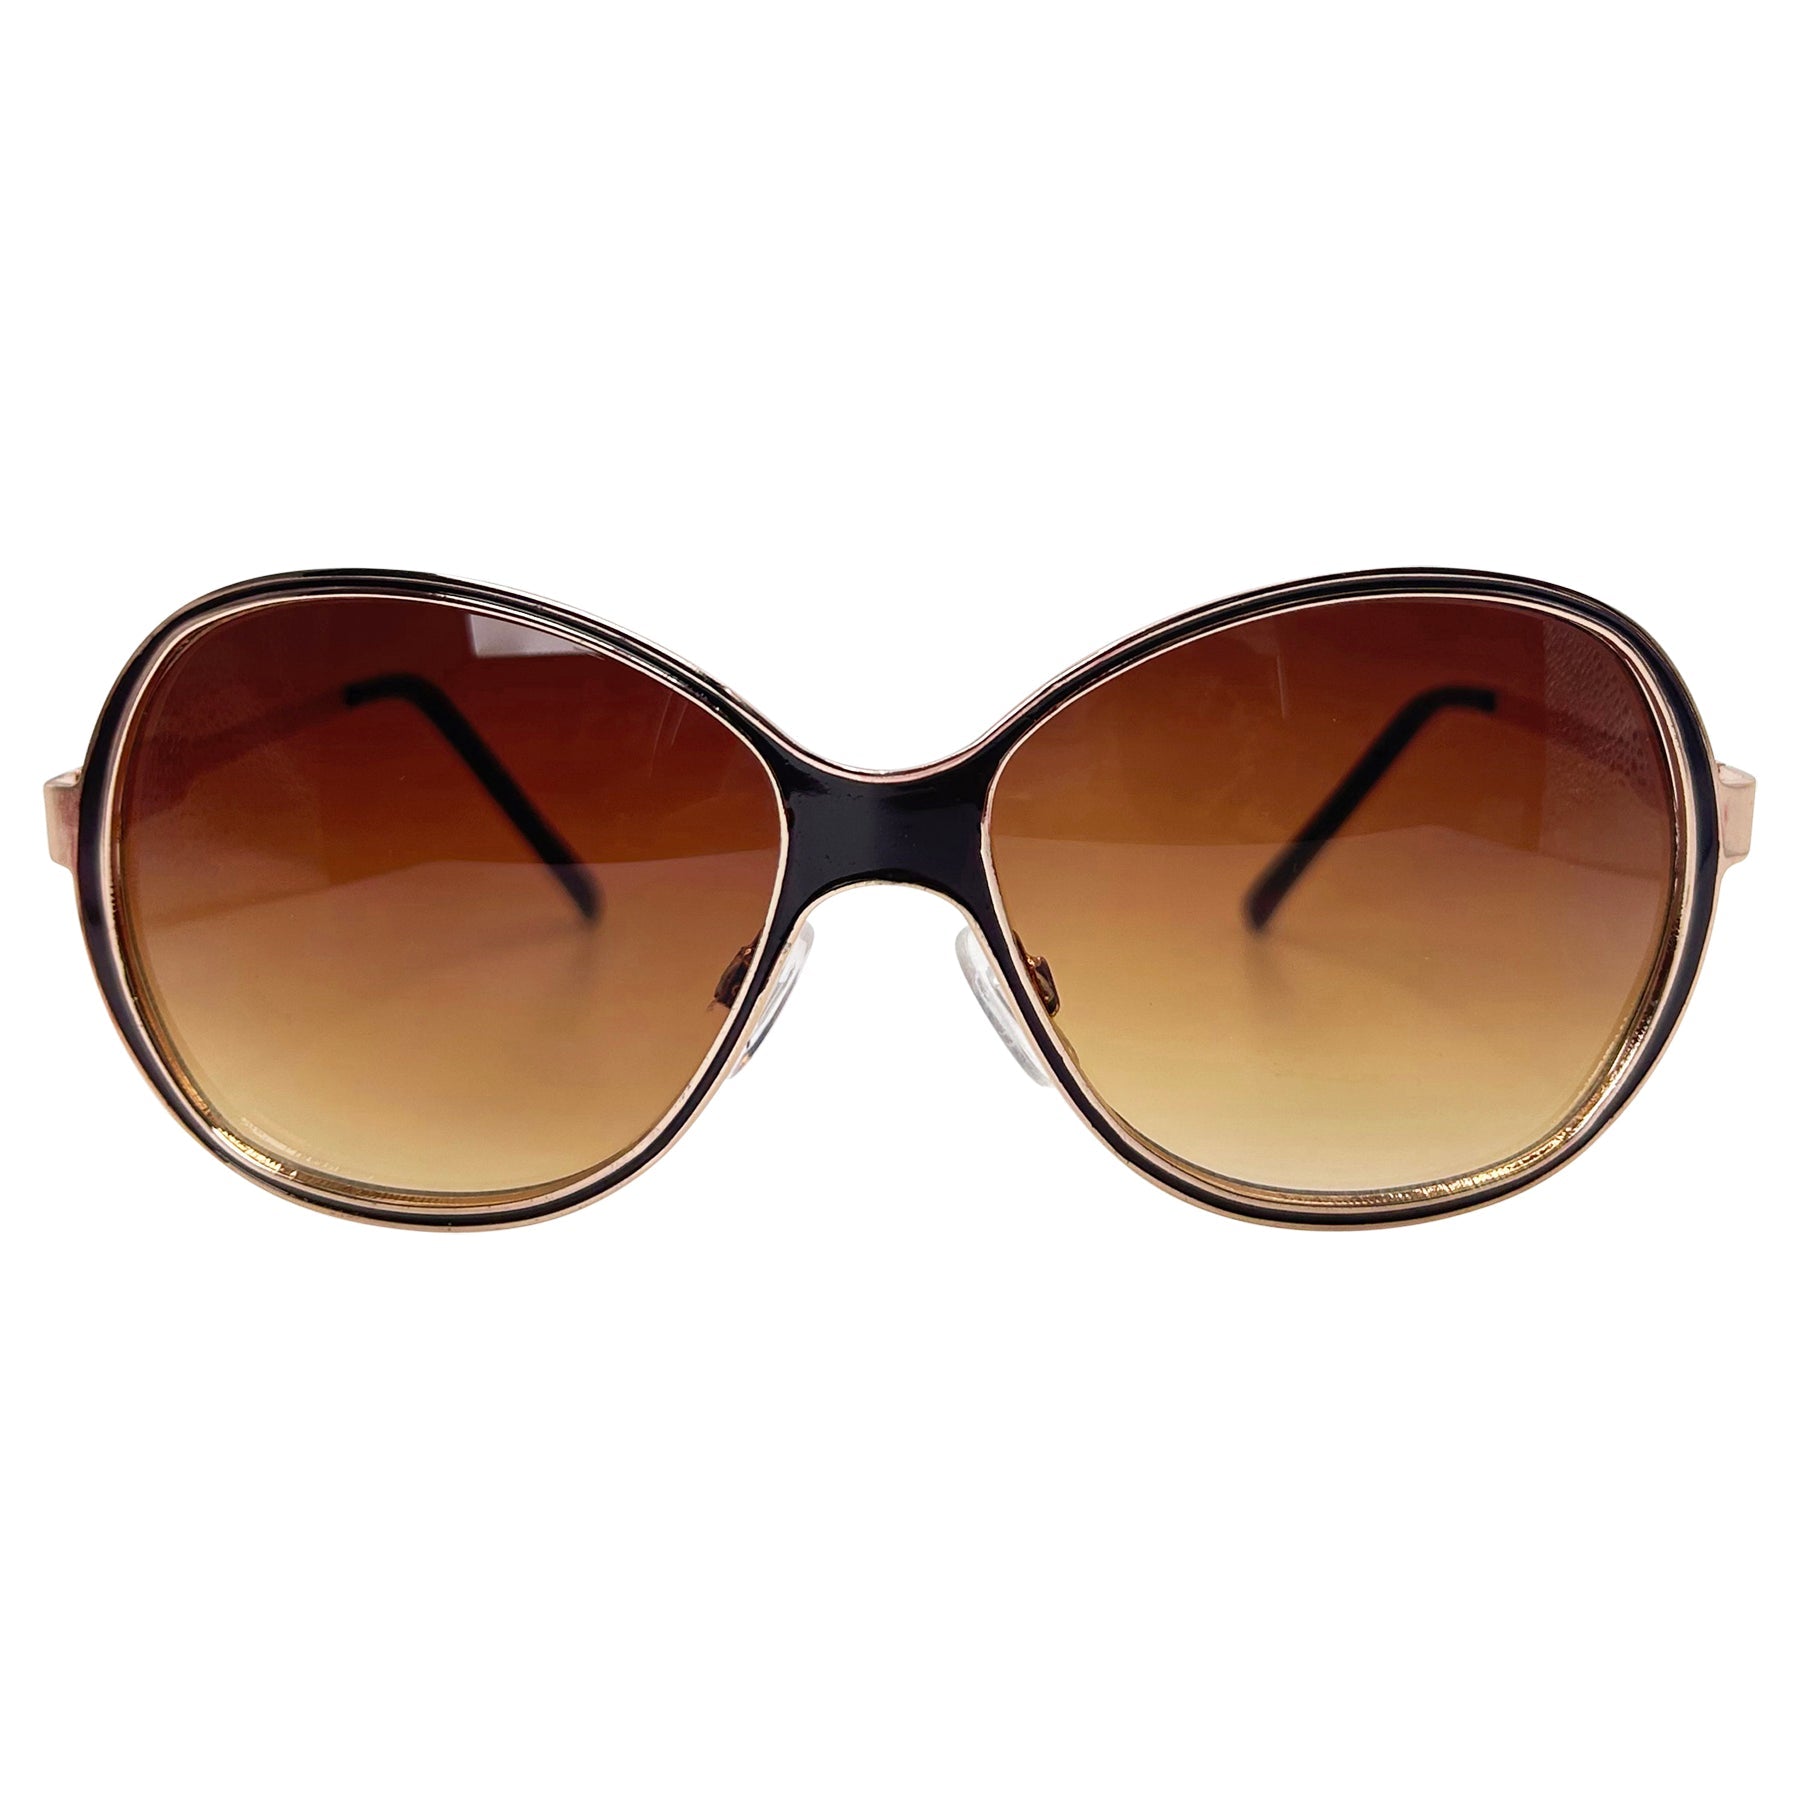 boho sleaze chic retro sunglasses with a round metal frame